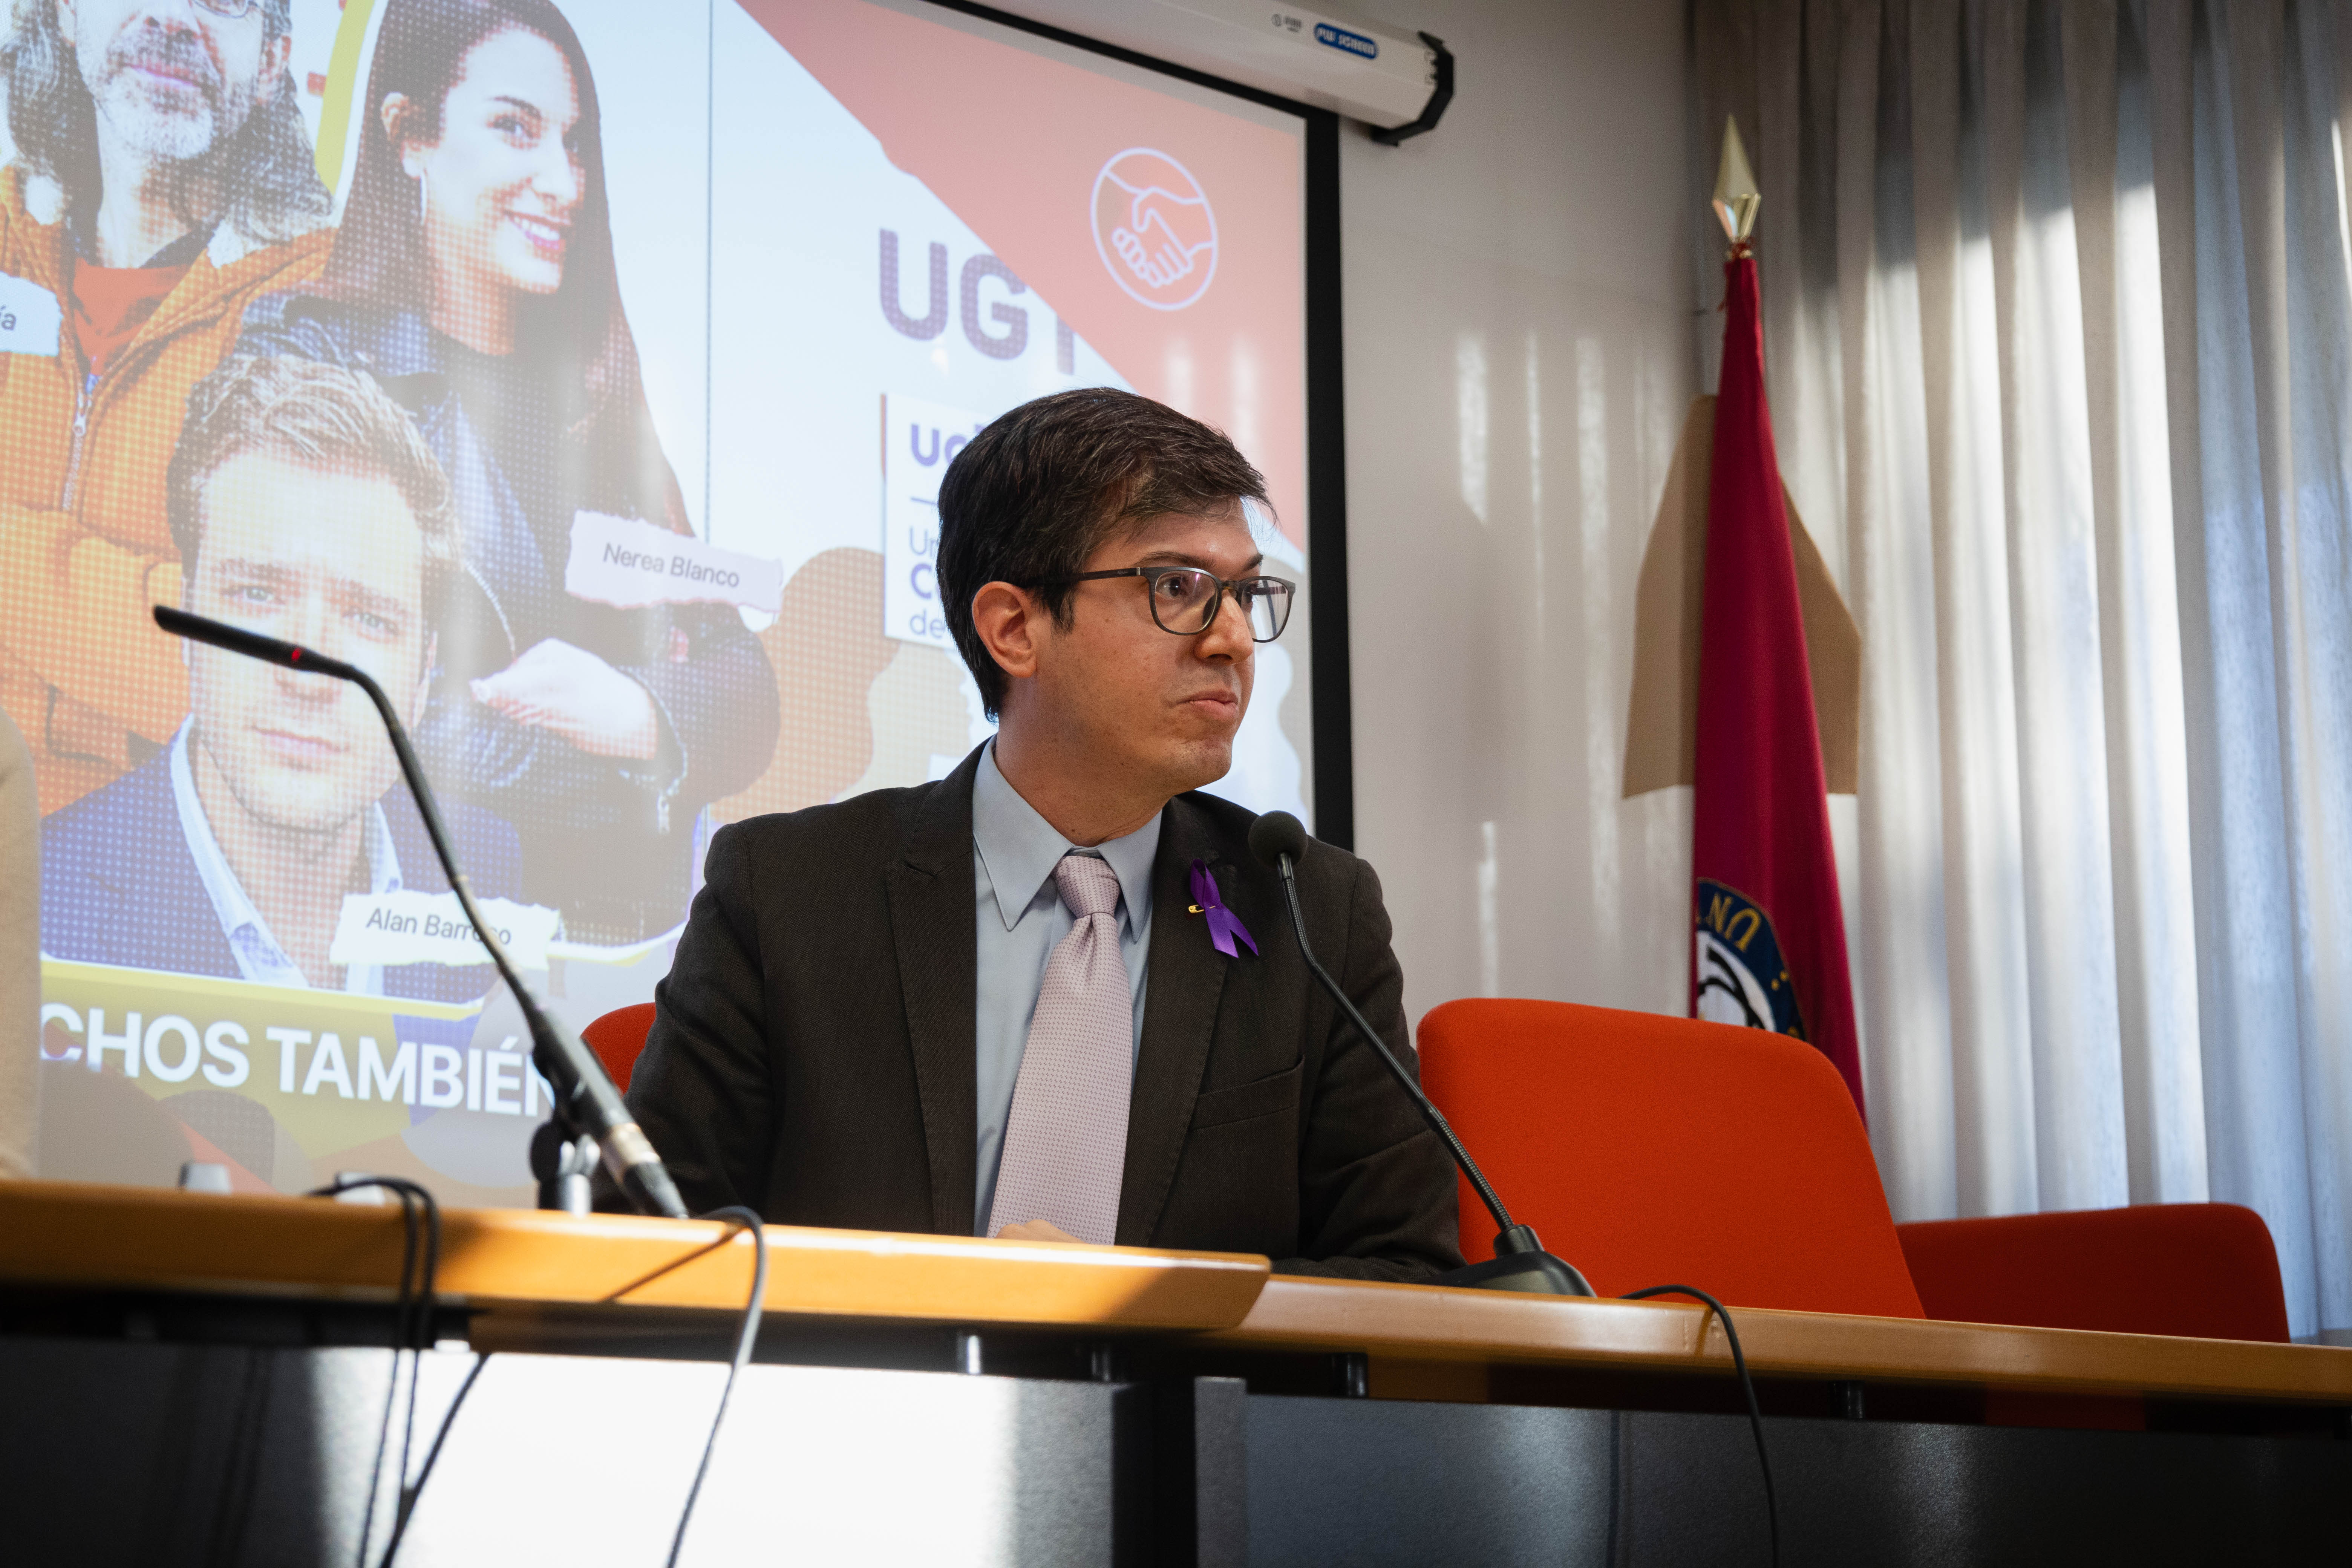 Daniel Pérez del Prado es Economista y profesor en la UC3M